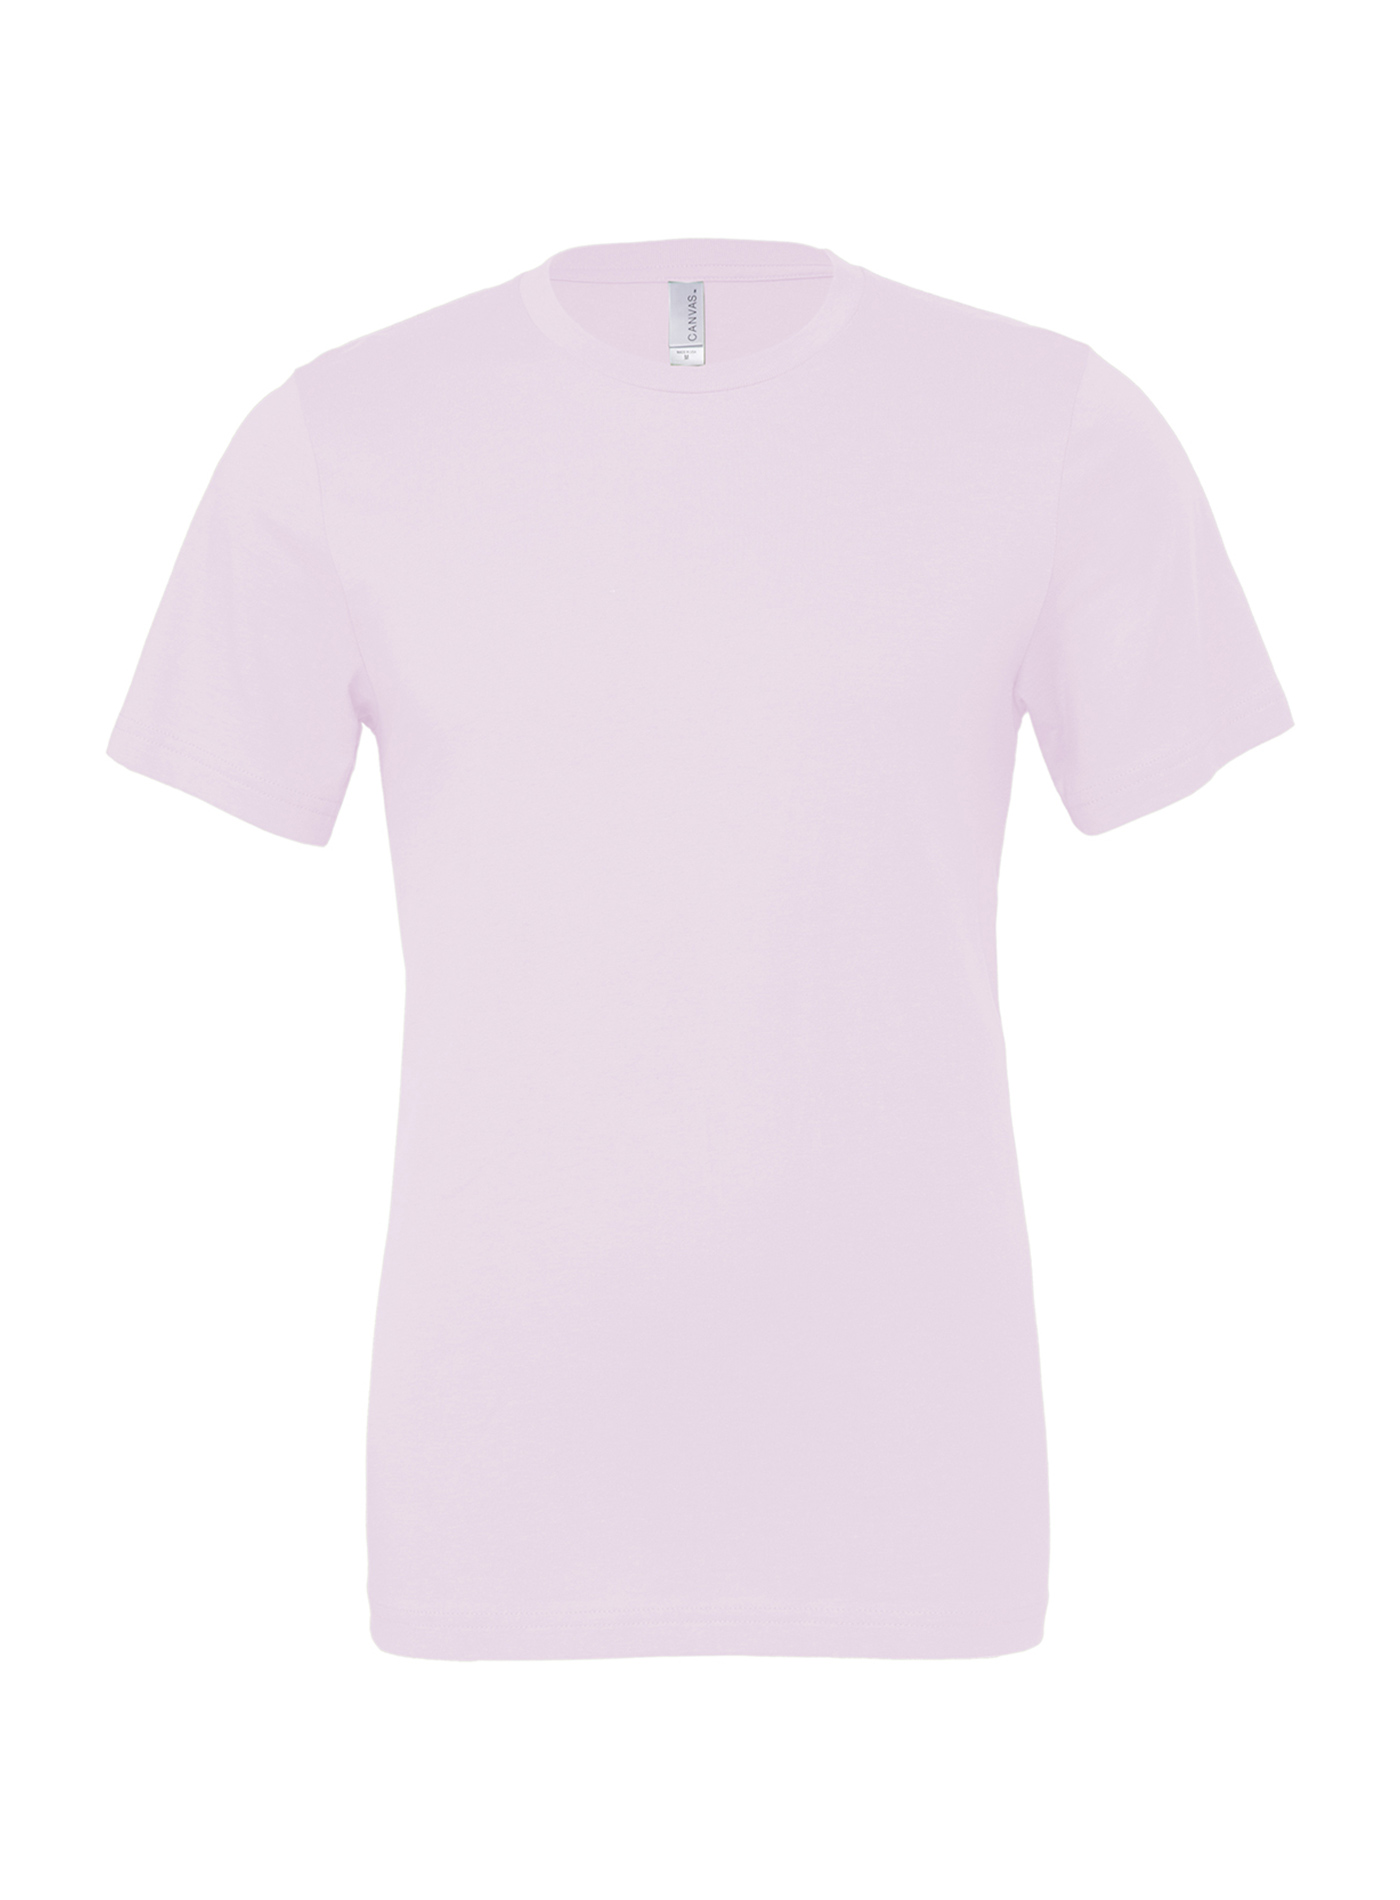 Unisex tričko Jersey - Bledě růžová XL